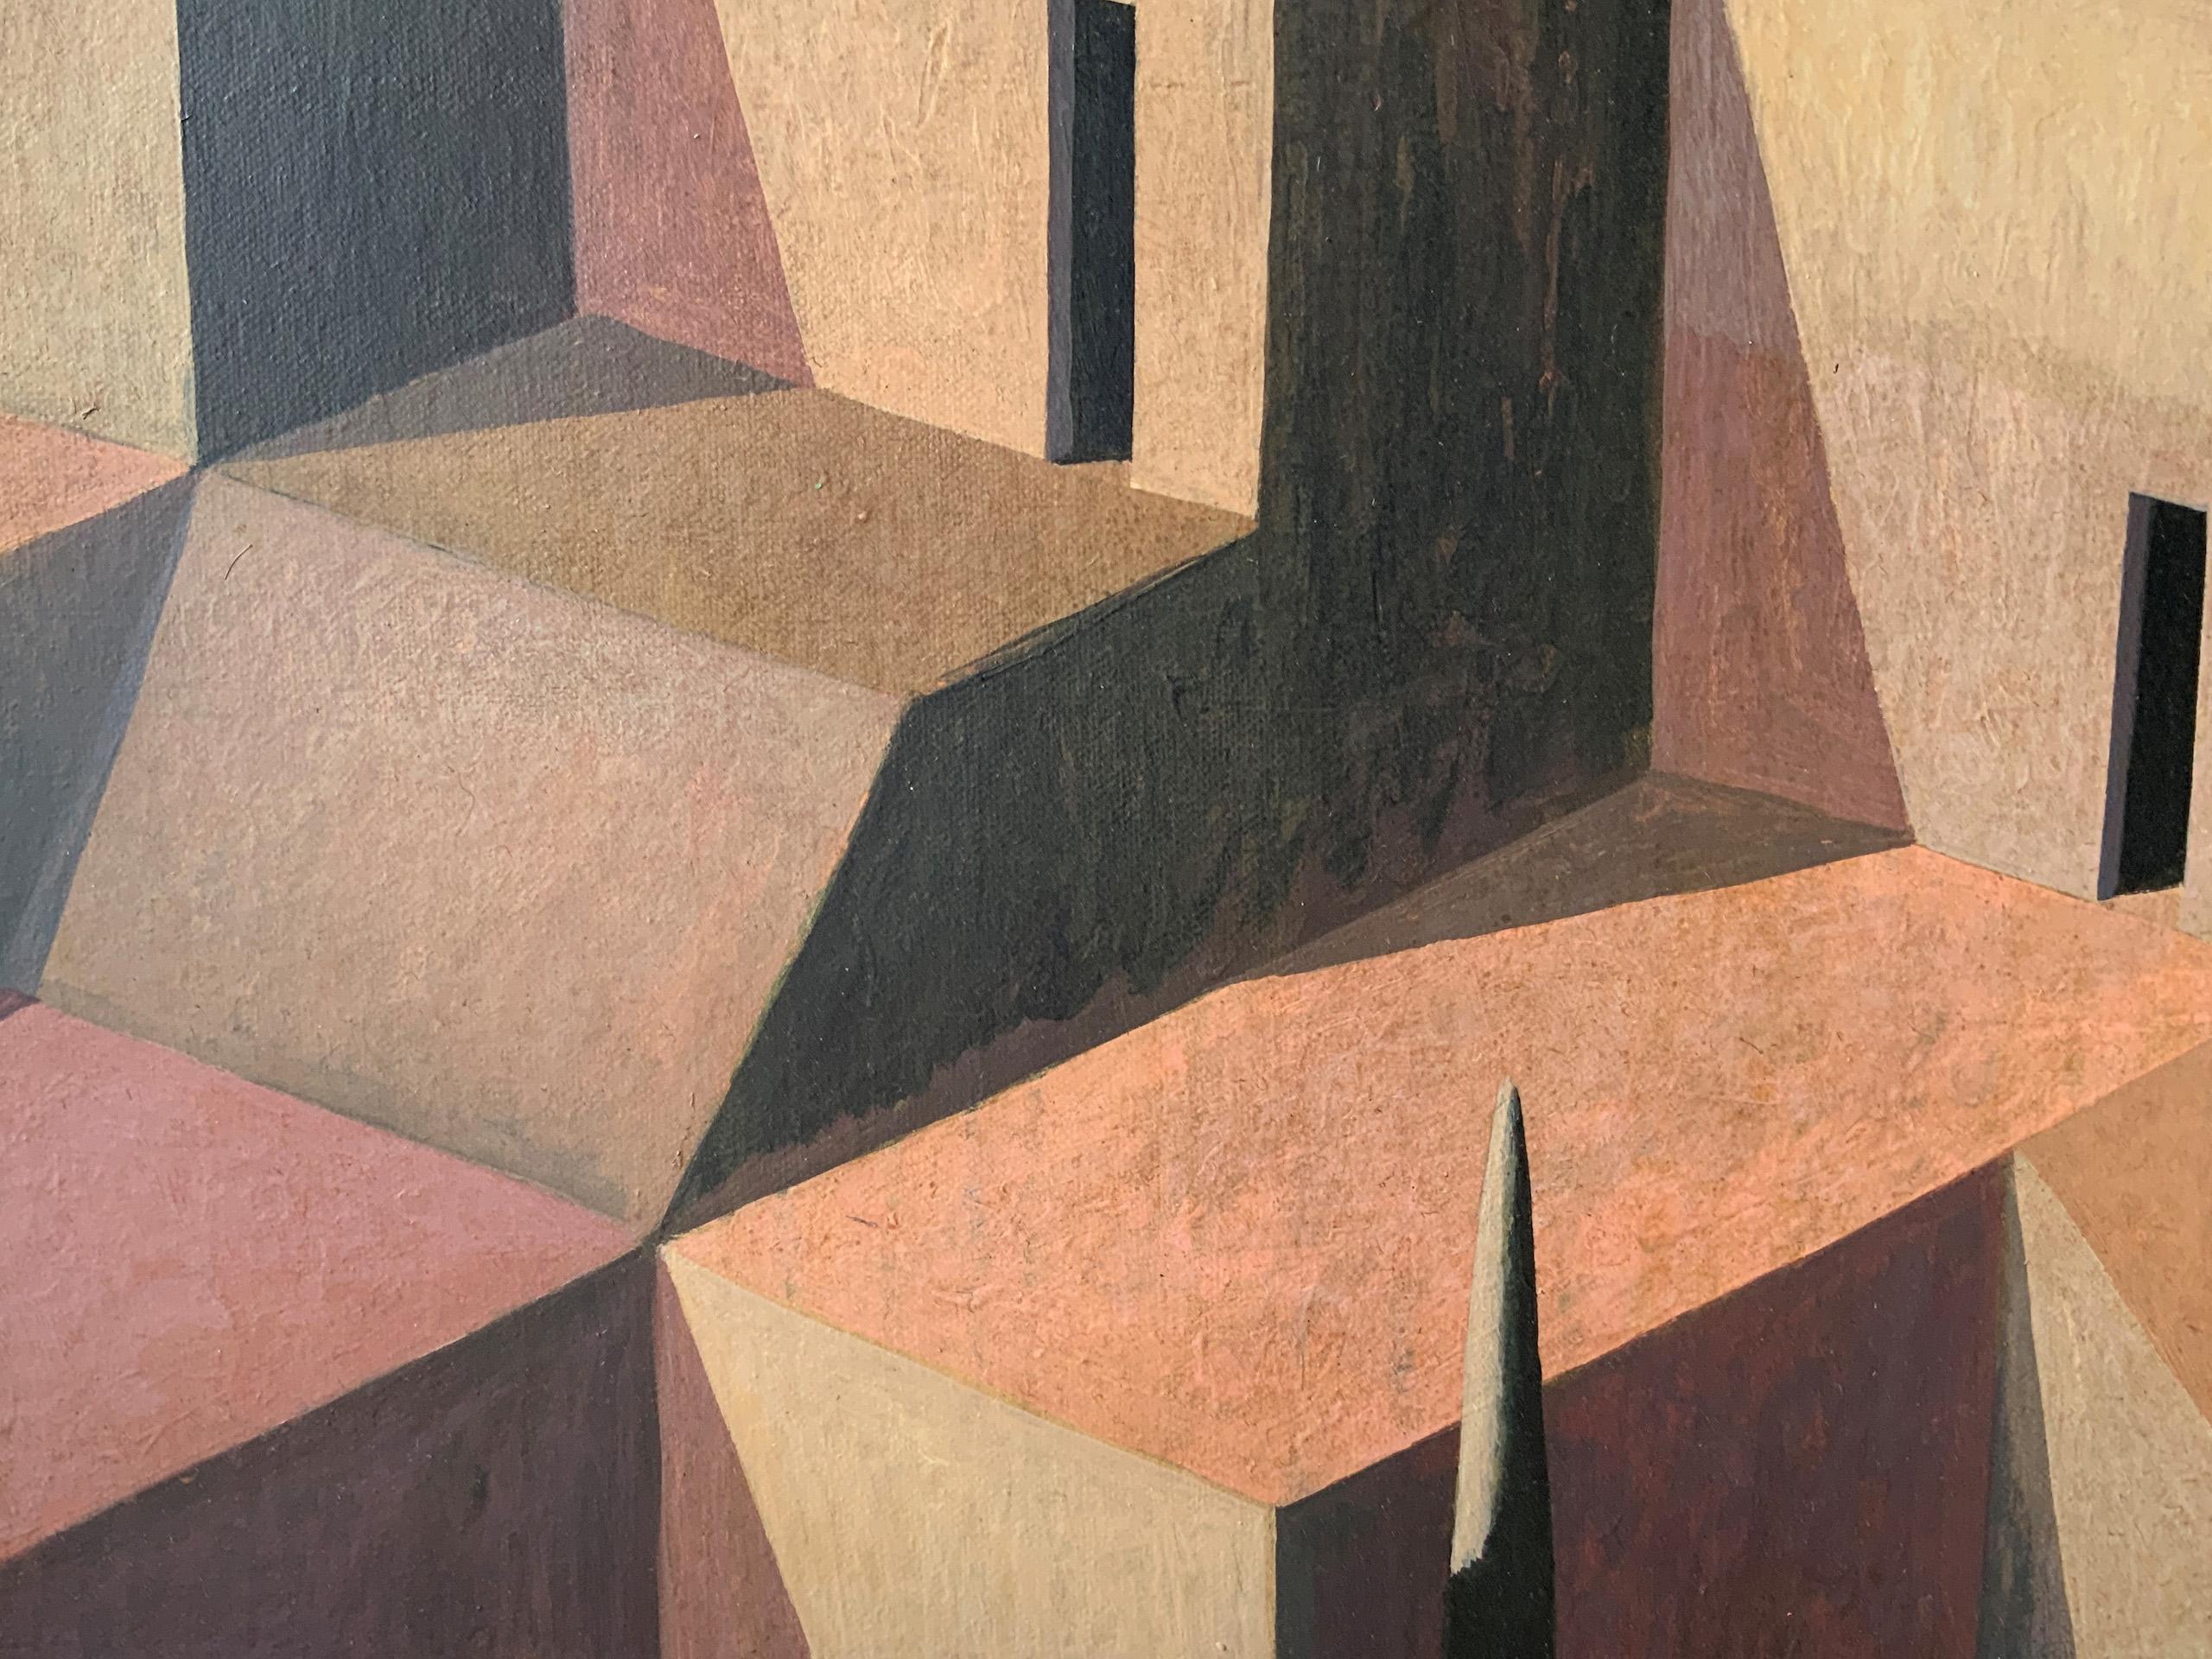 LAB-P by Ramon Enrich - Geometric landscape painting, architecture, warm tones For Sale 3